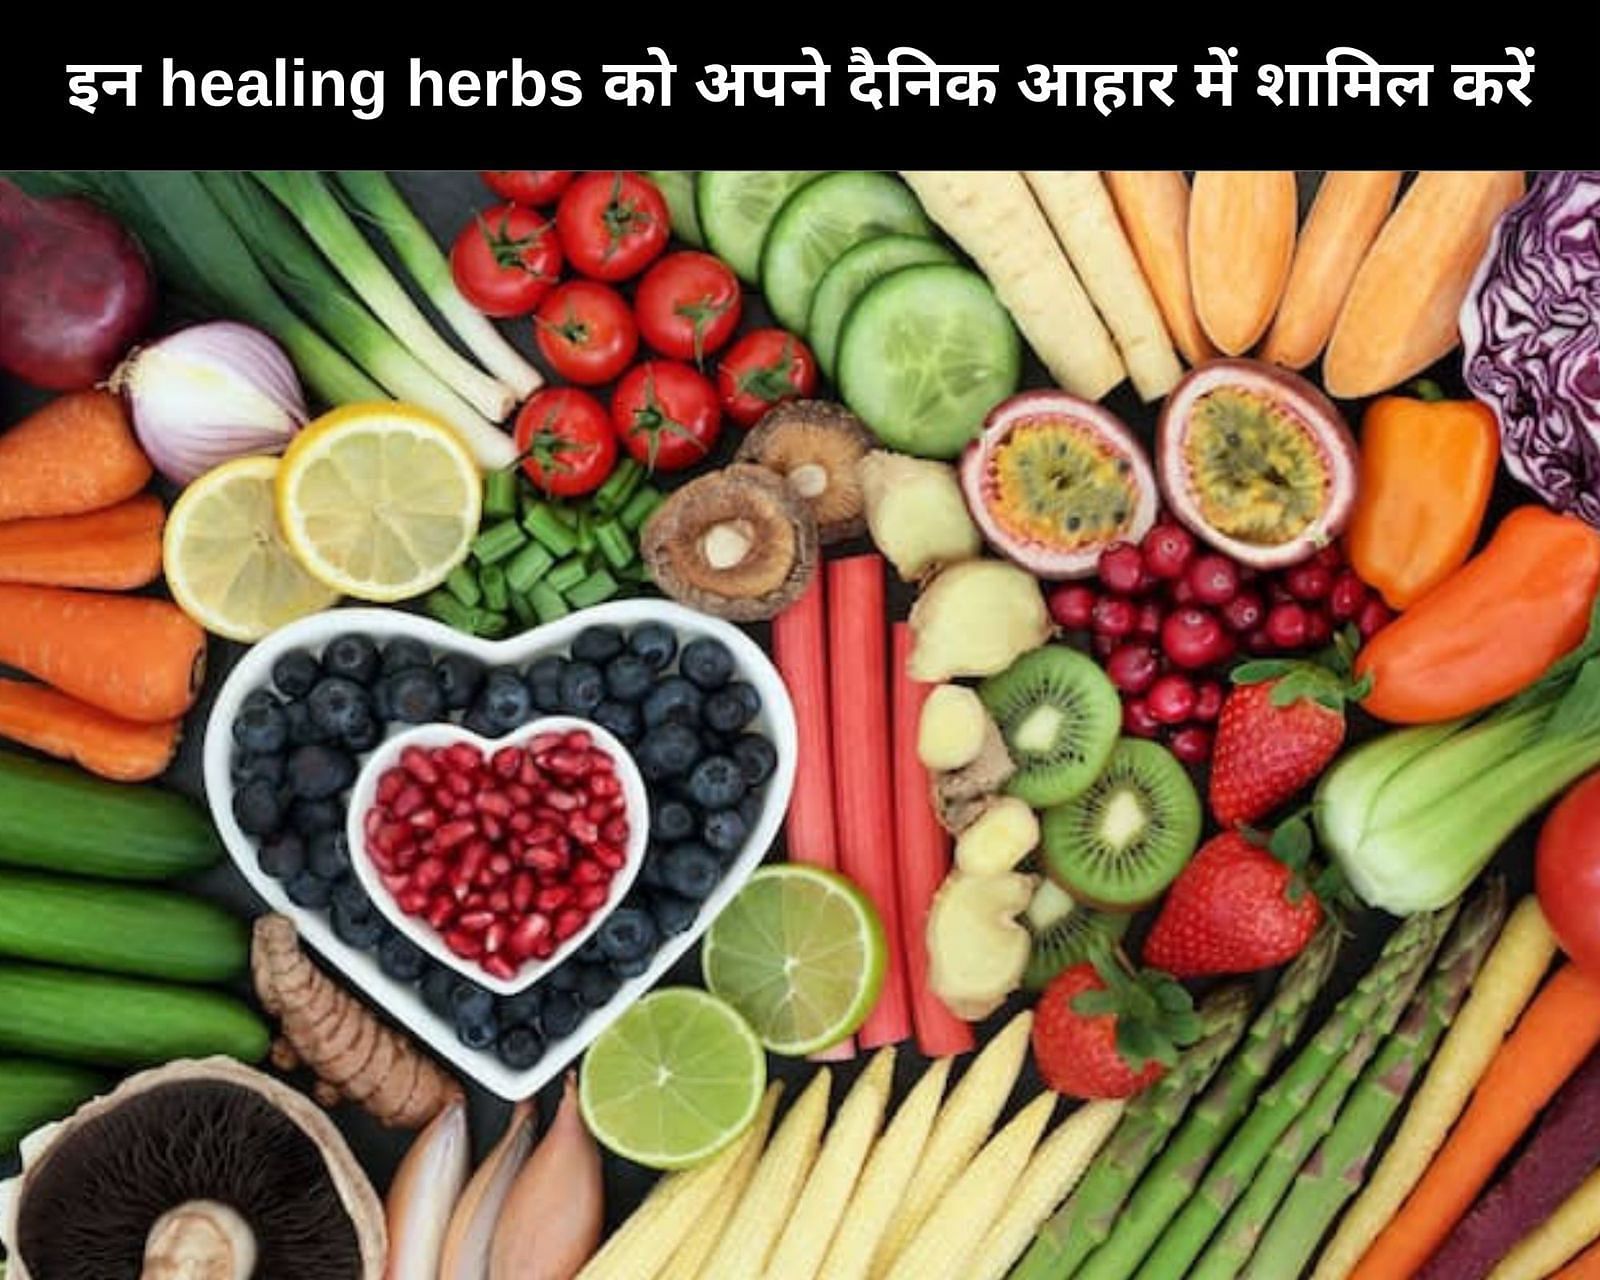 इन 7 healing herbs को अपने दैनिक आहार में शामिल करें (फोटो - sportskeedaहिन्दी)